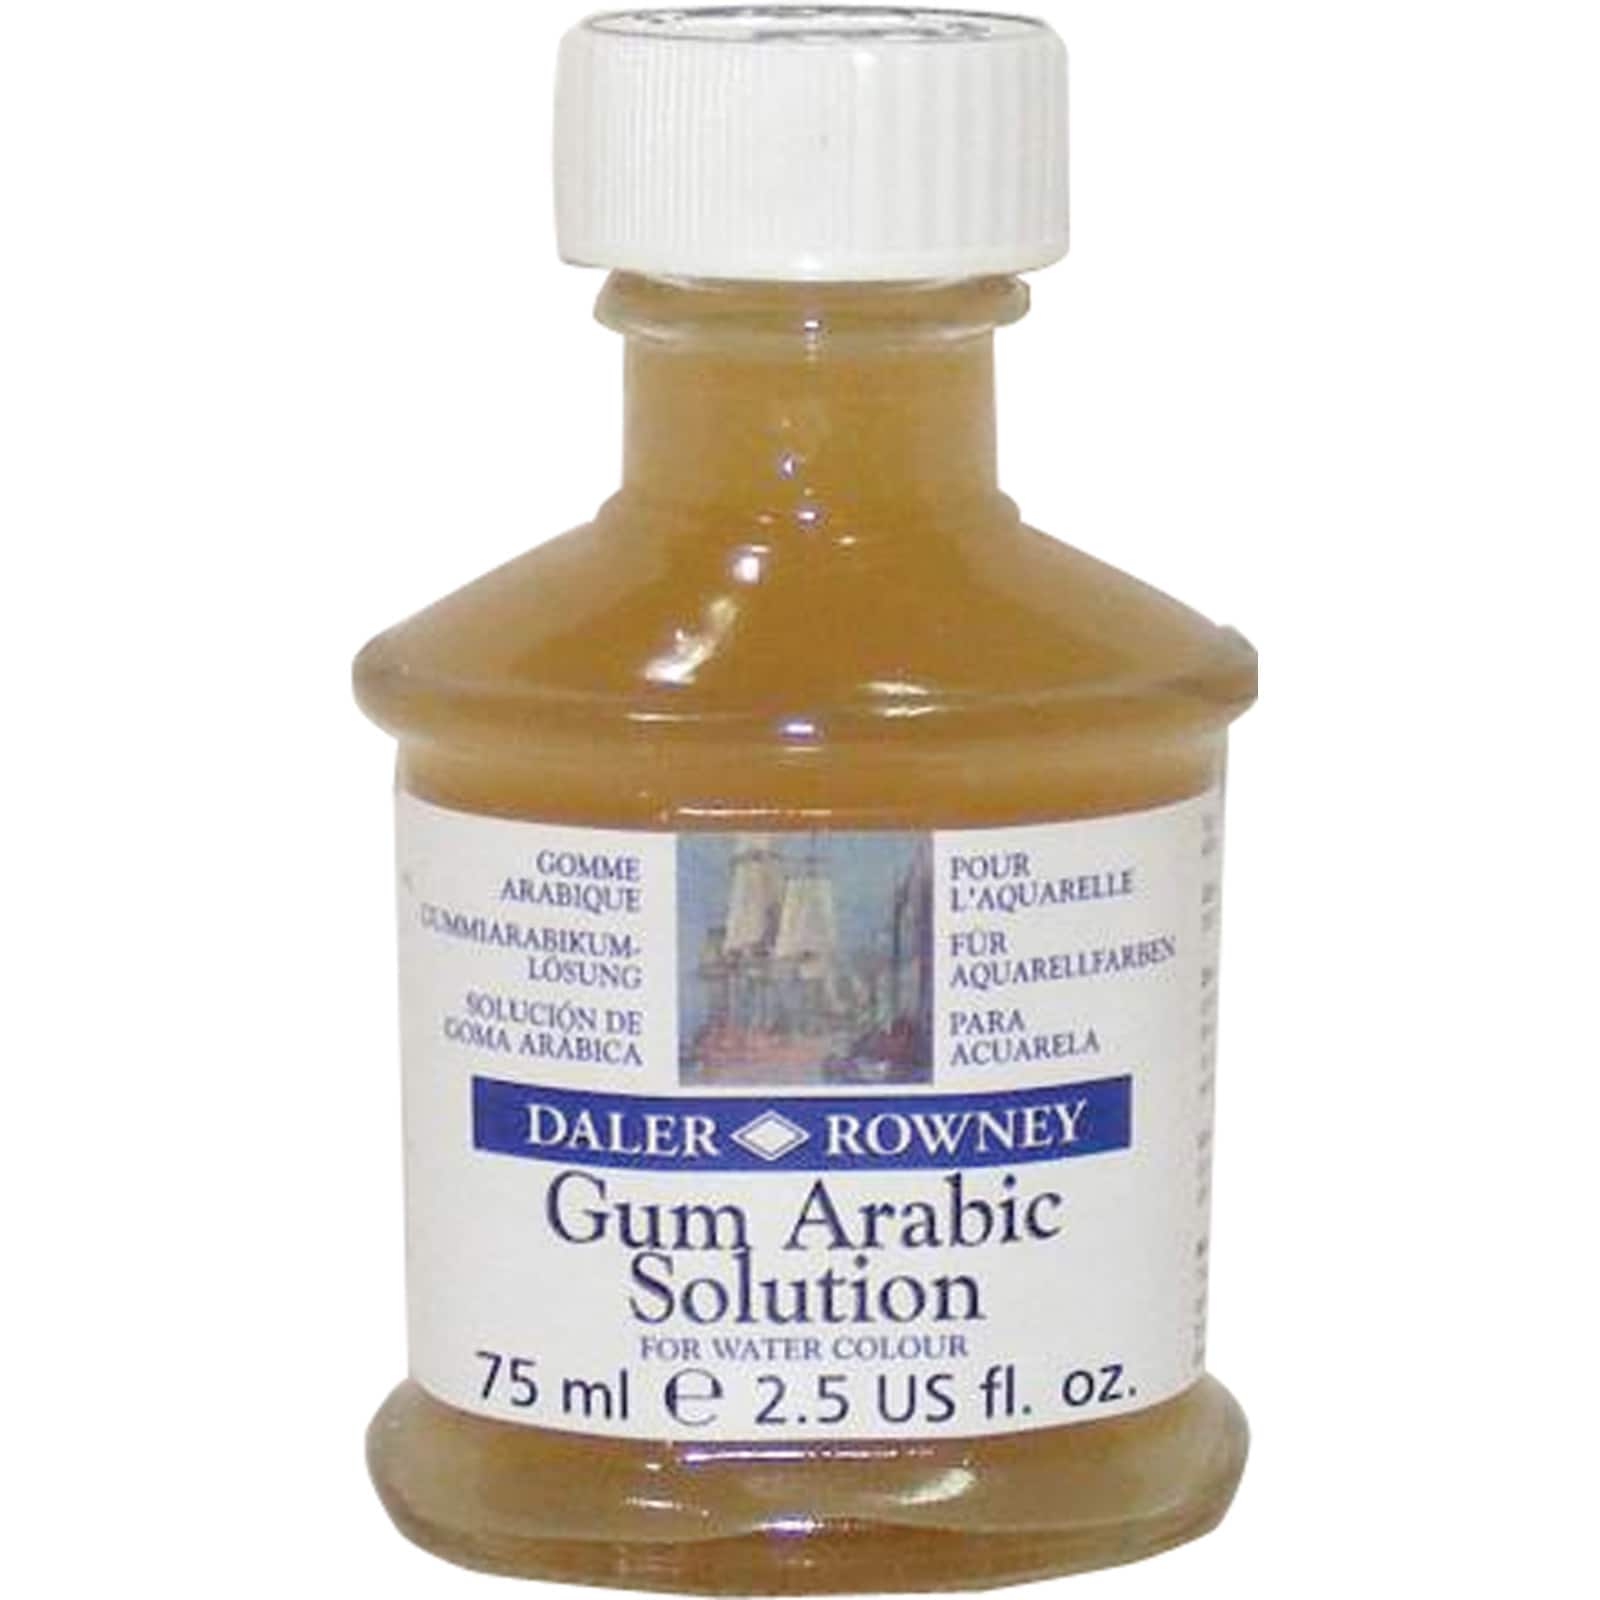 Daler-Rowney Gum Arabic Solution - 2.5 oz. jar